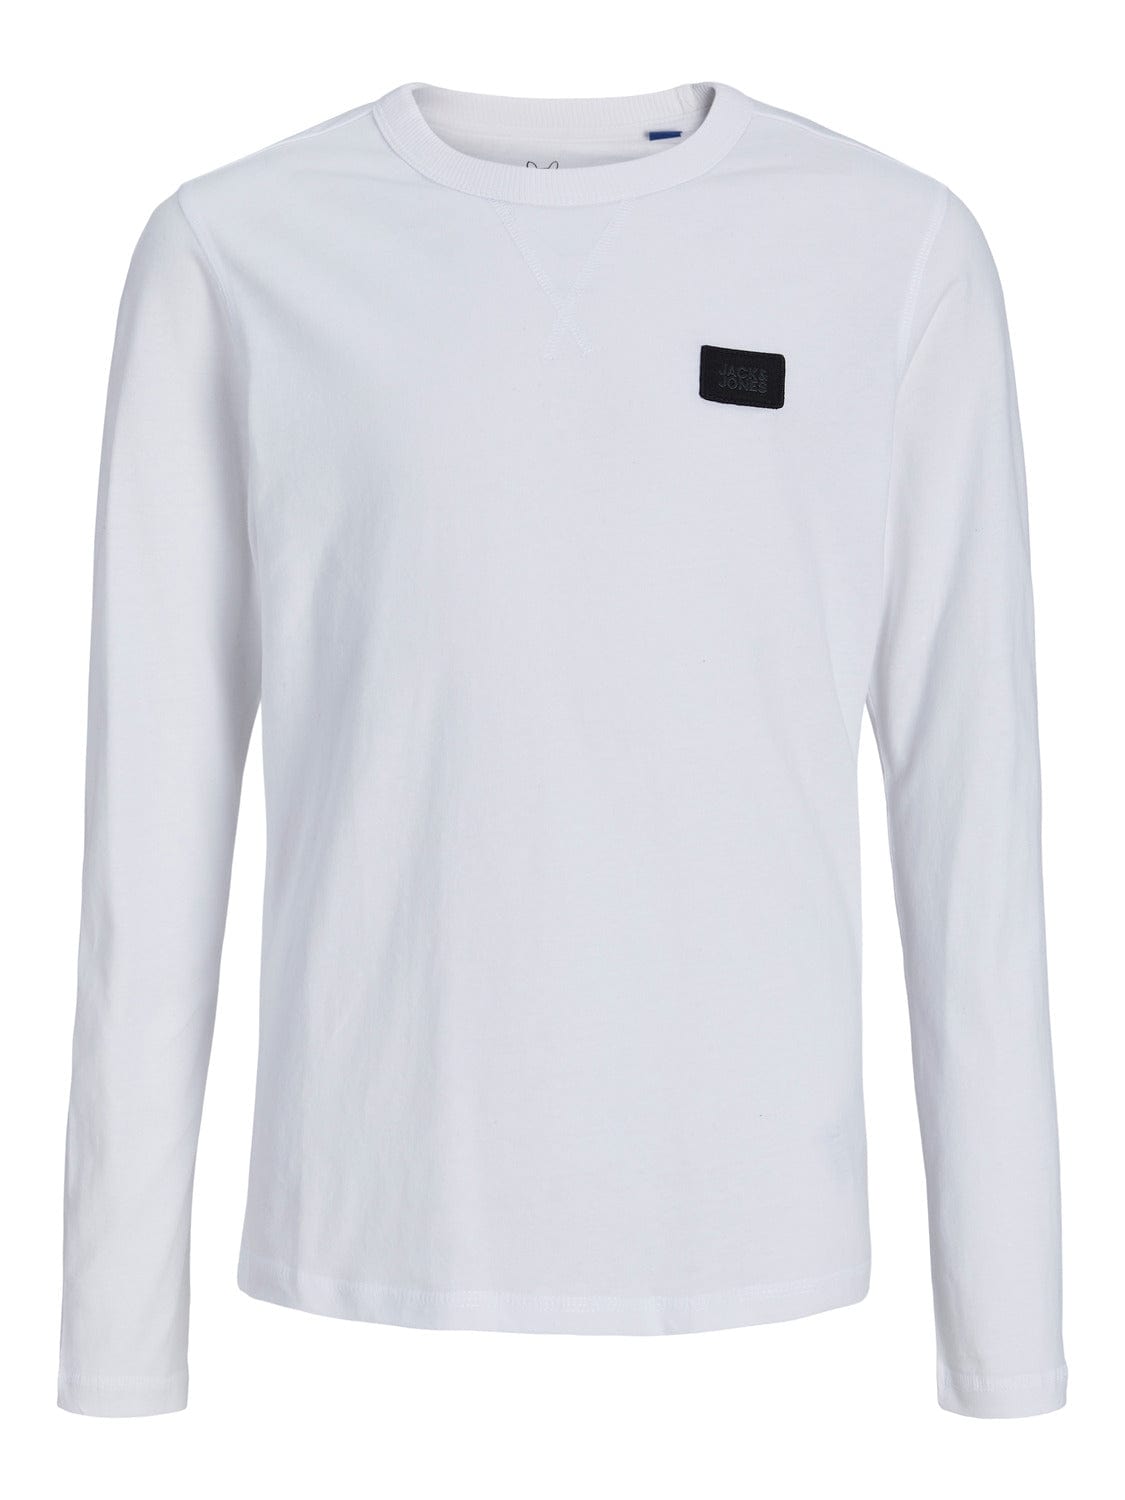 Camiseta JUNIOR algodón manga larga Blanca - CLASSIC